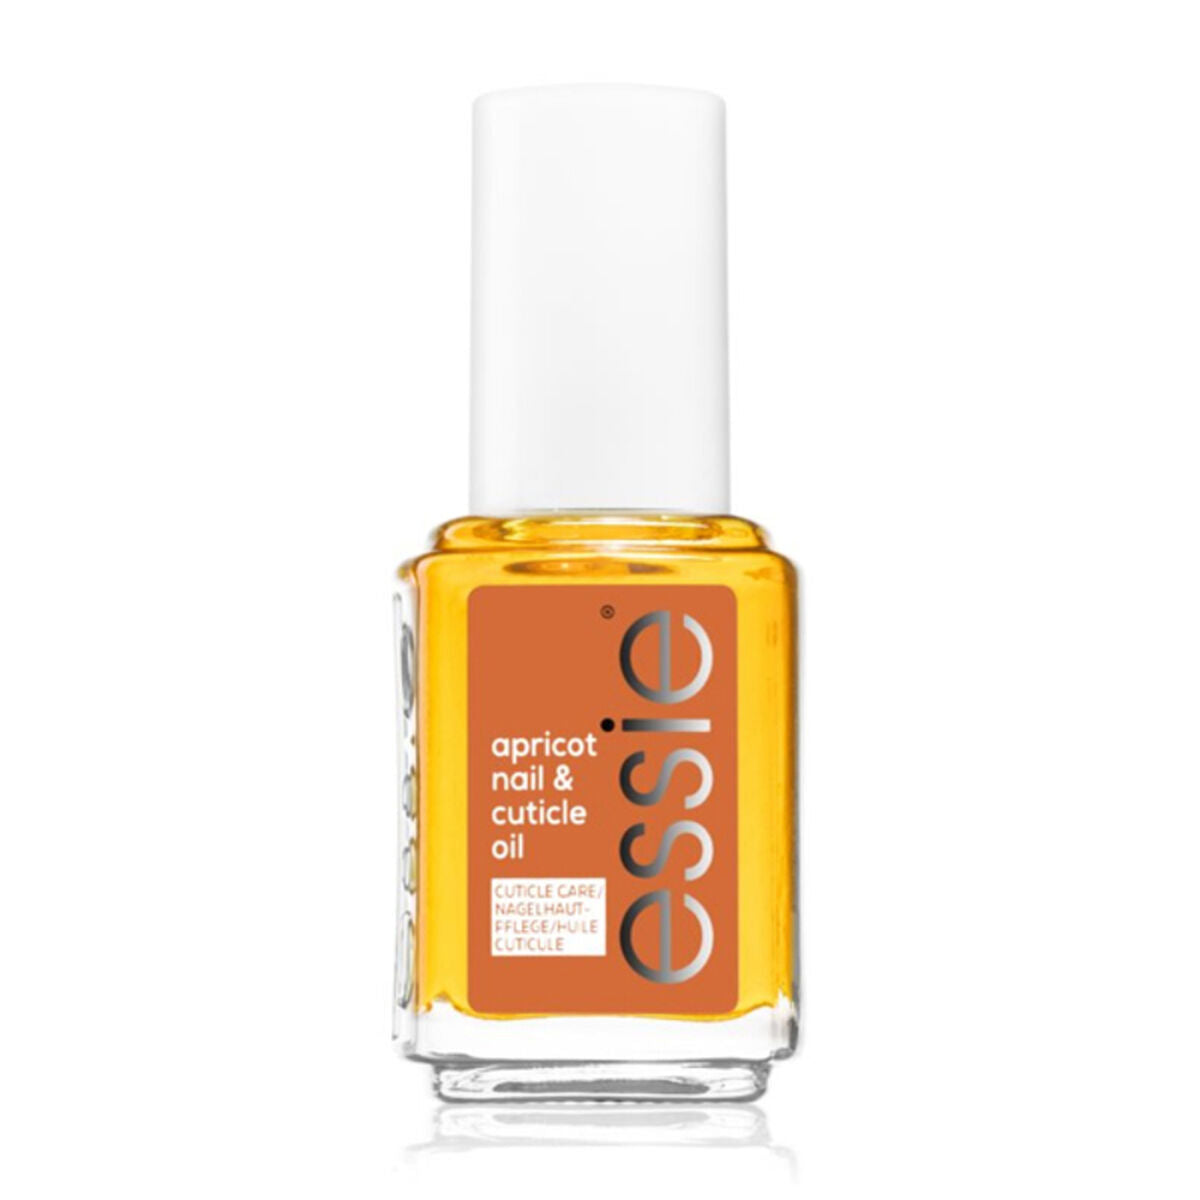 Nail polish APRICOT NAIL&CUTICLE OIL Essie (13,5 ml) - Calm Beauty IE